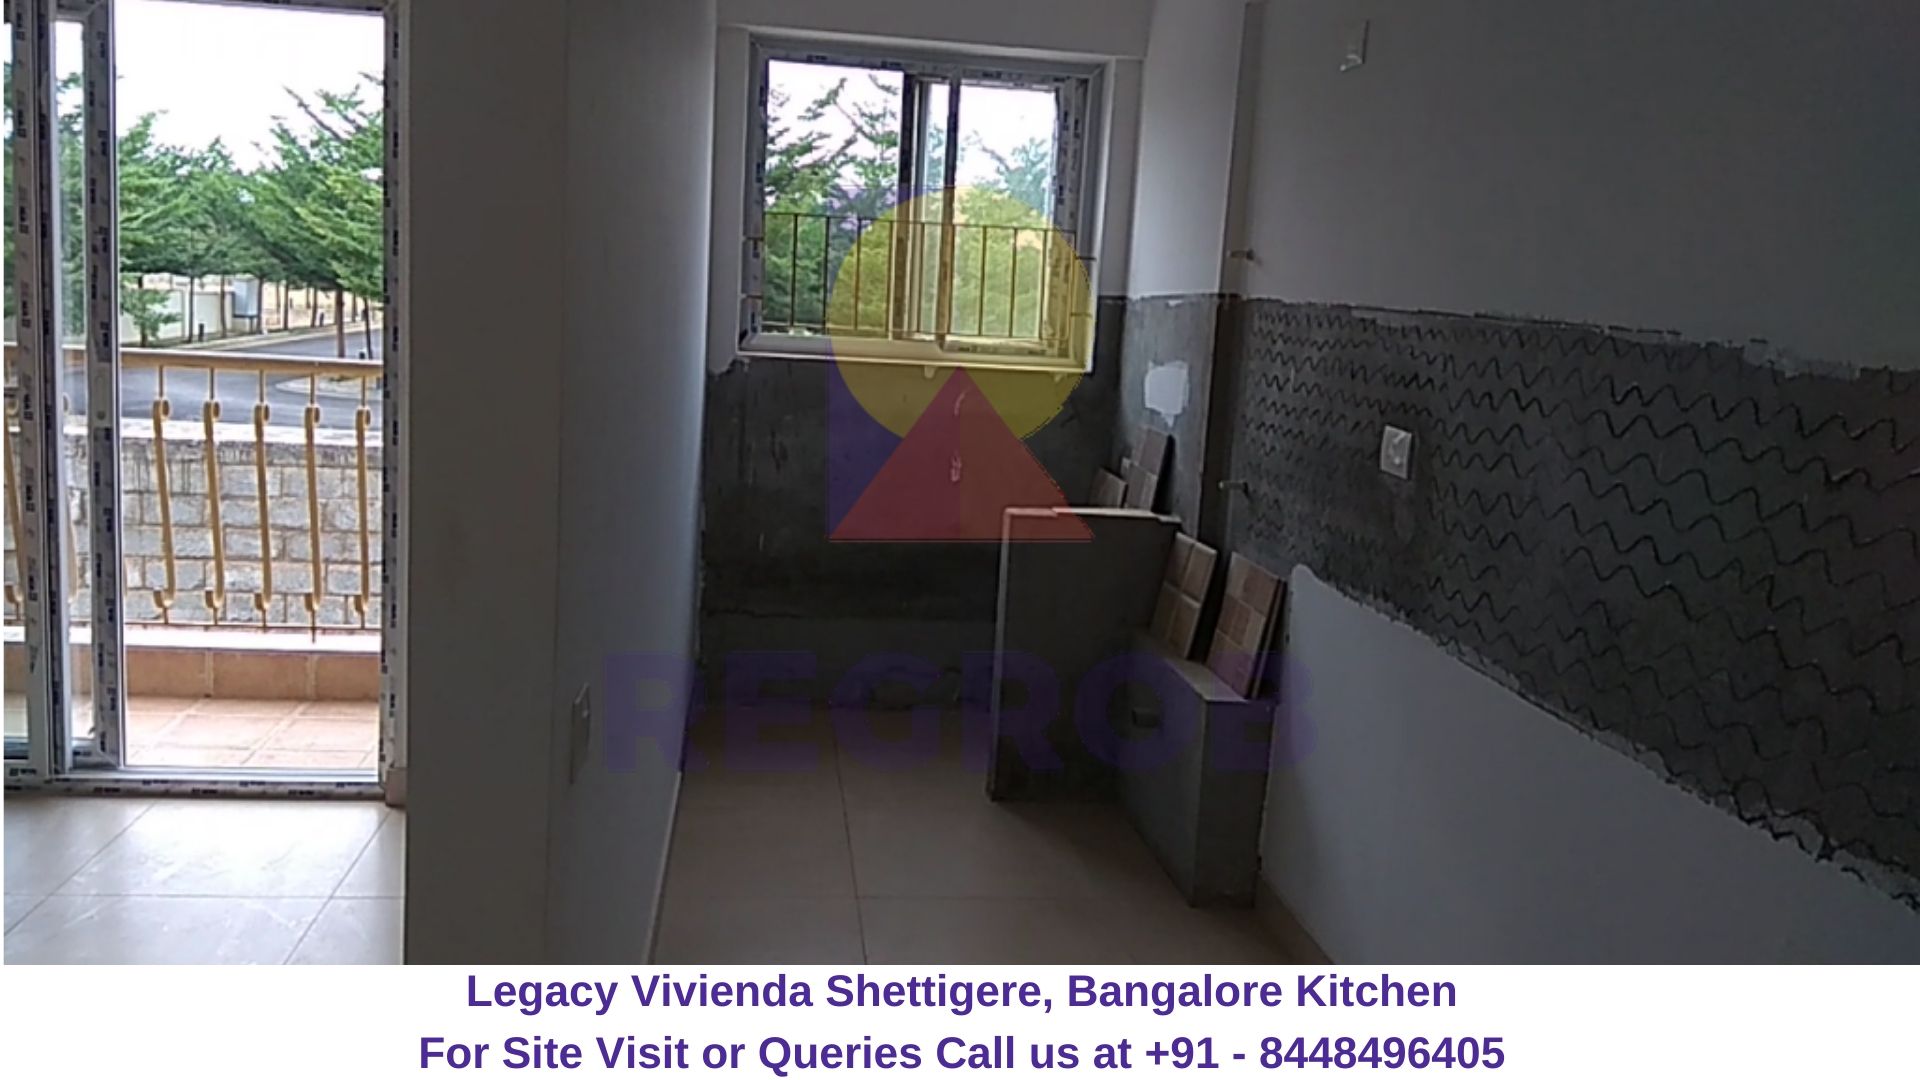 Legacy Vivienda Shettigere, Bangalore Front View